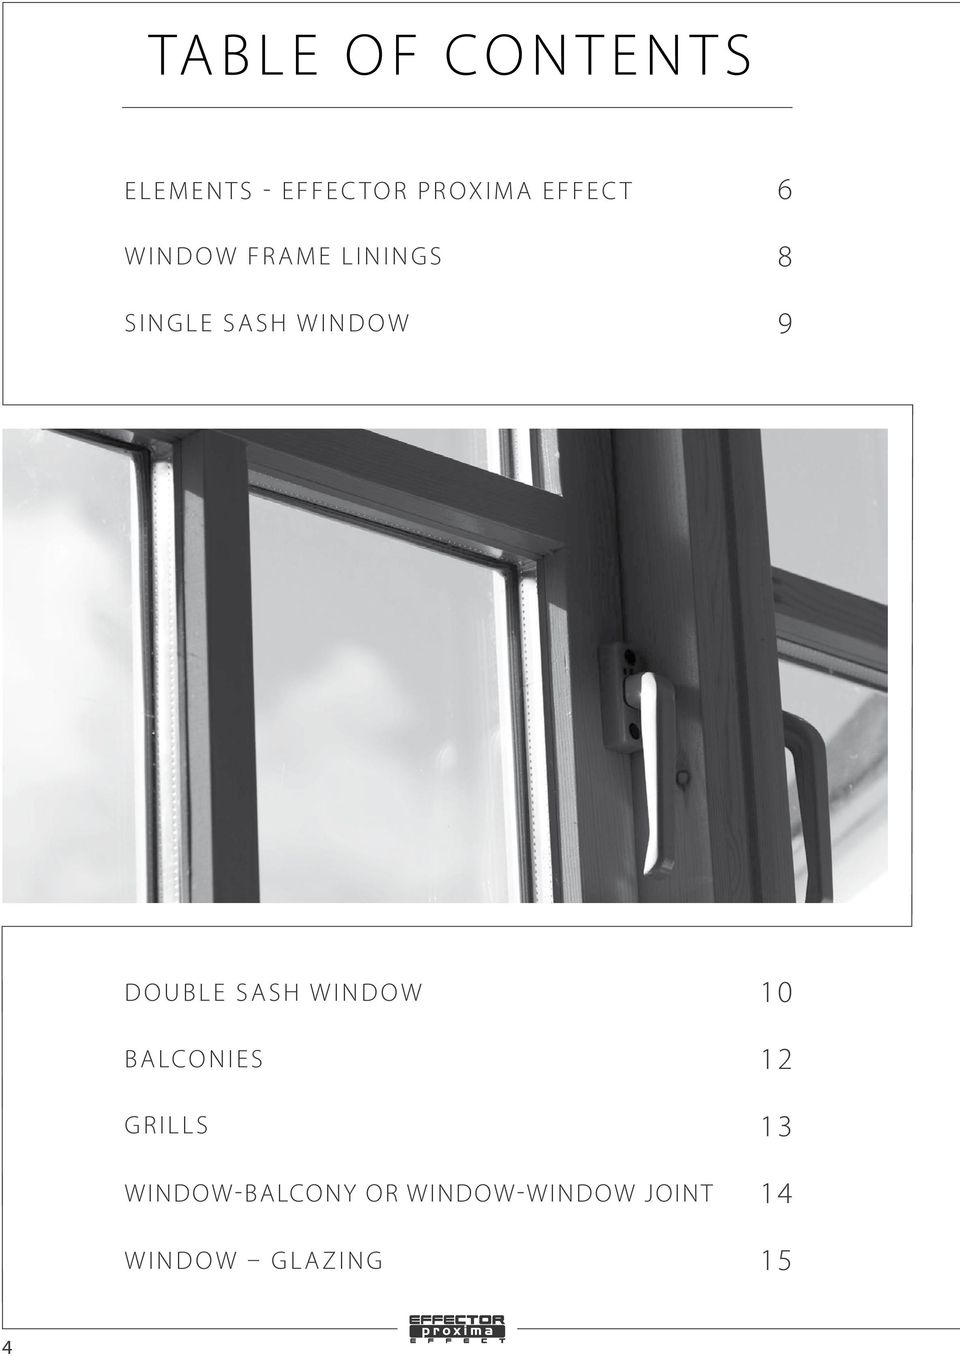 OknO DOUBLE dwudzielne SASH WINDOW Bbalconies alko ny szpro grillssy połączenie window-balcony